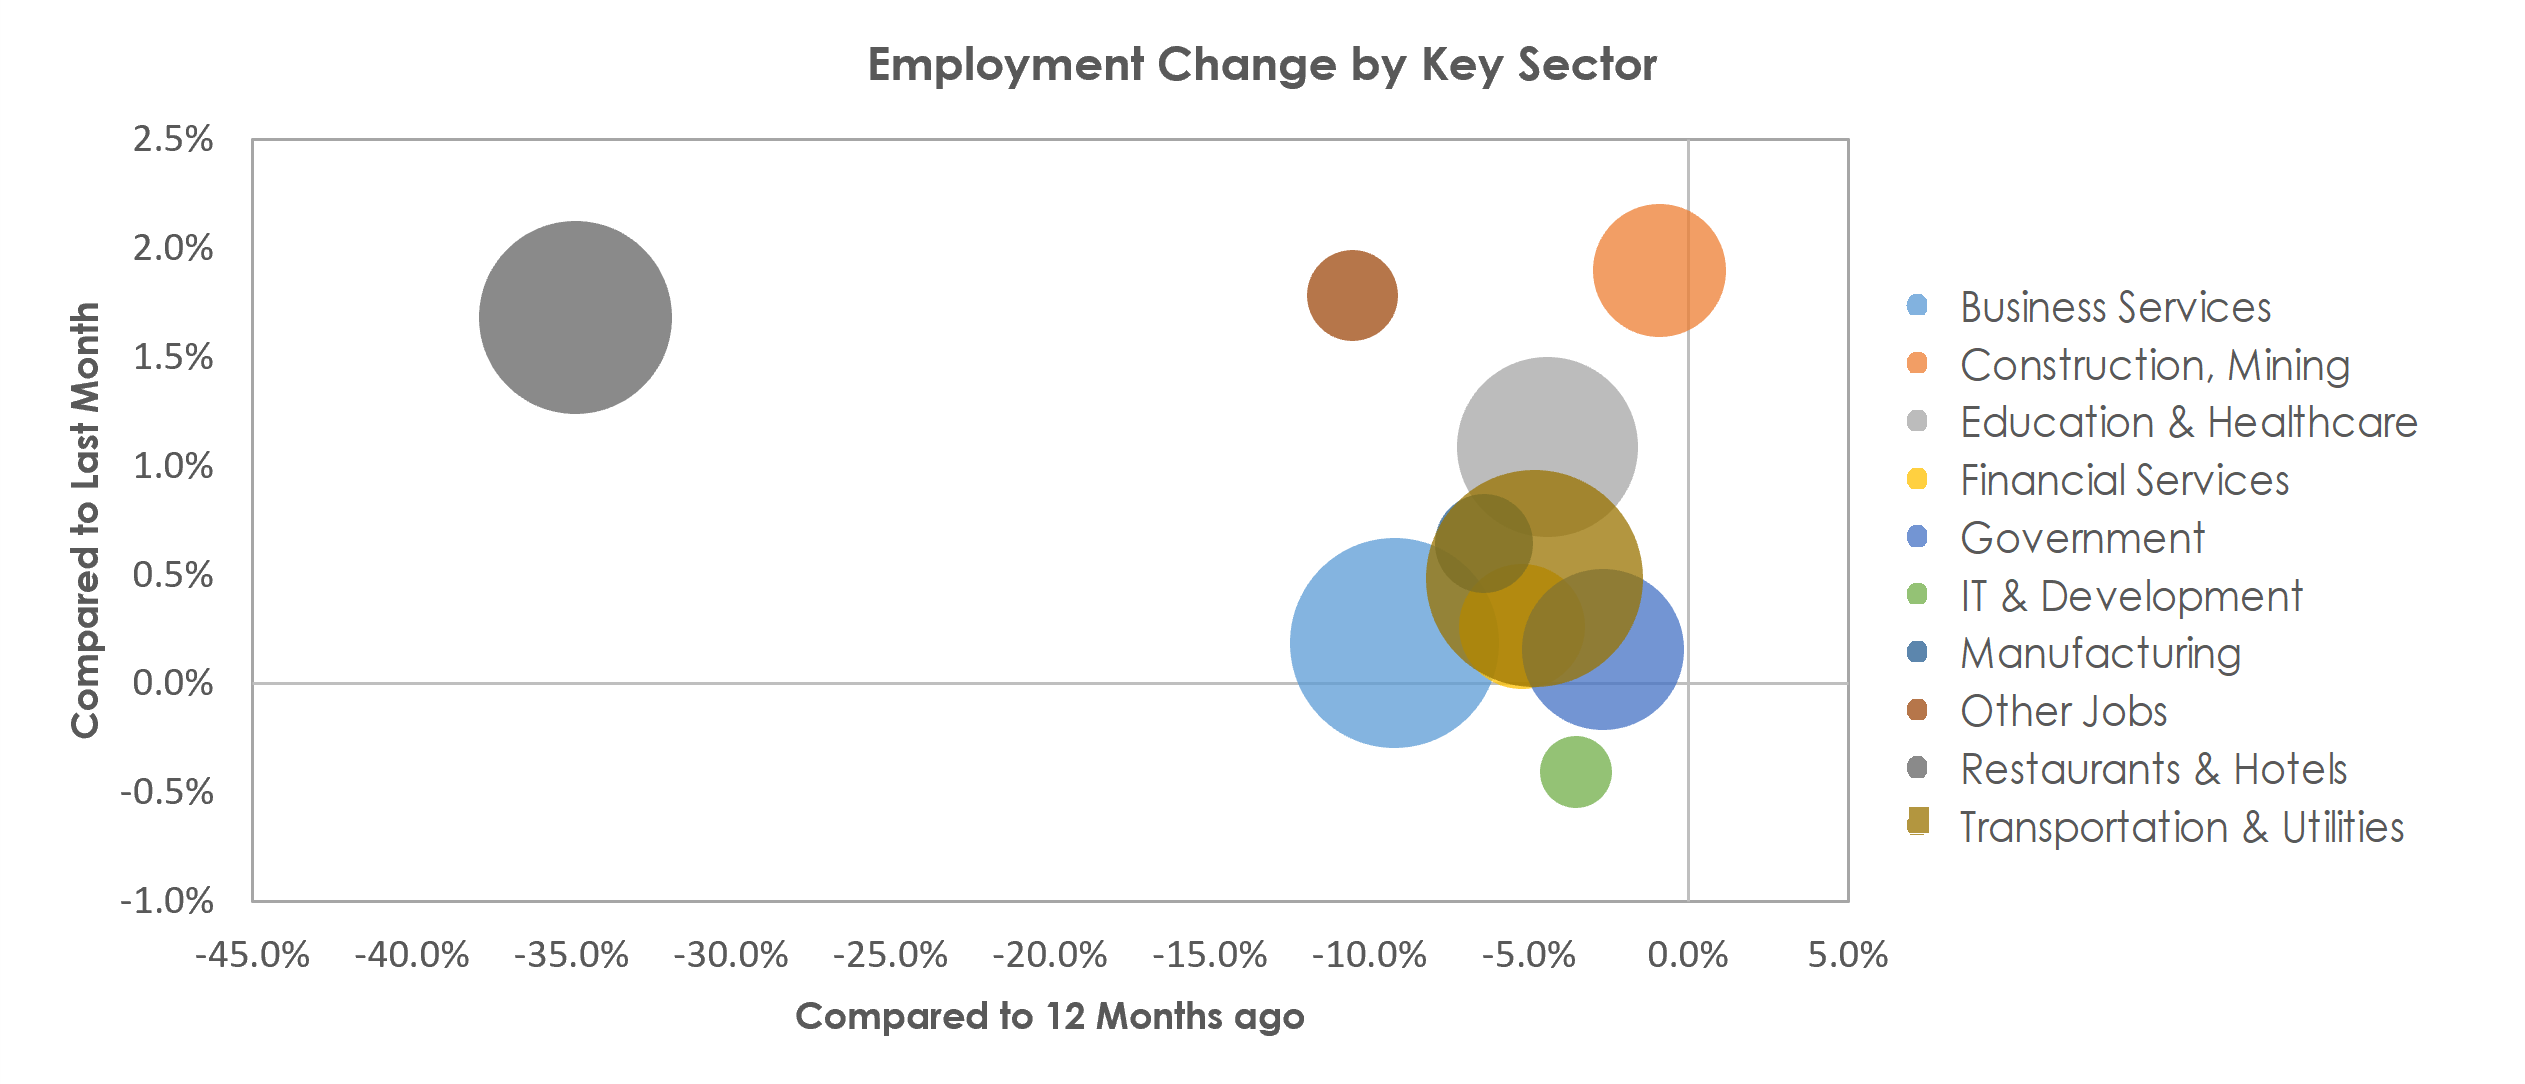 Orlando-Kissimmee-Sanford, FL Unemployment by Industry March 2021